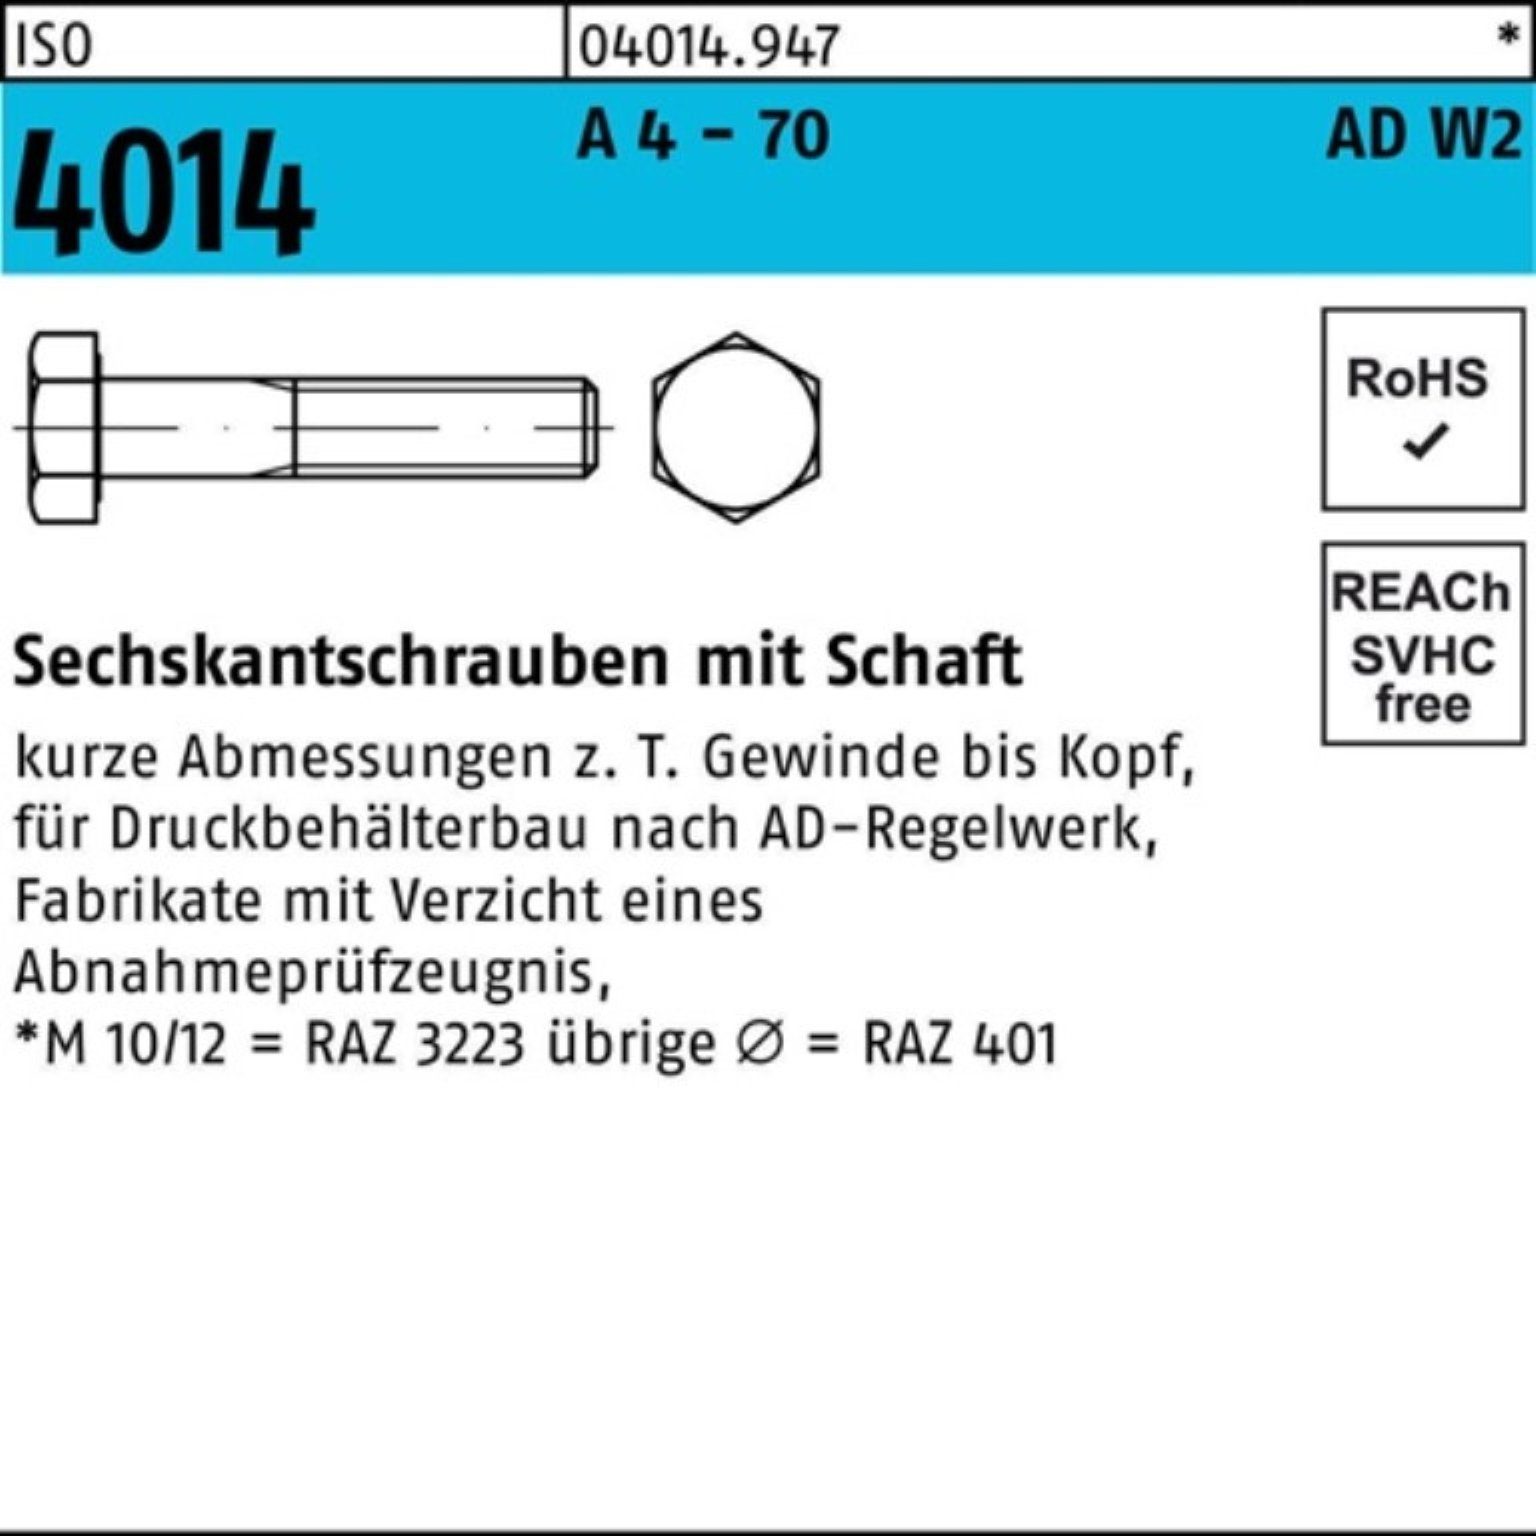 Bufab Sechskantschraube 100er Pack Sechskantschraube ISO 4014 Schaft M20x 180 A 4 - 70 AD-W2 1 | Schrauben